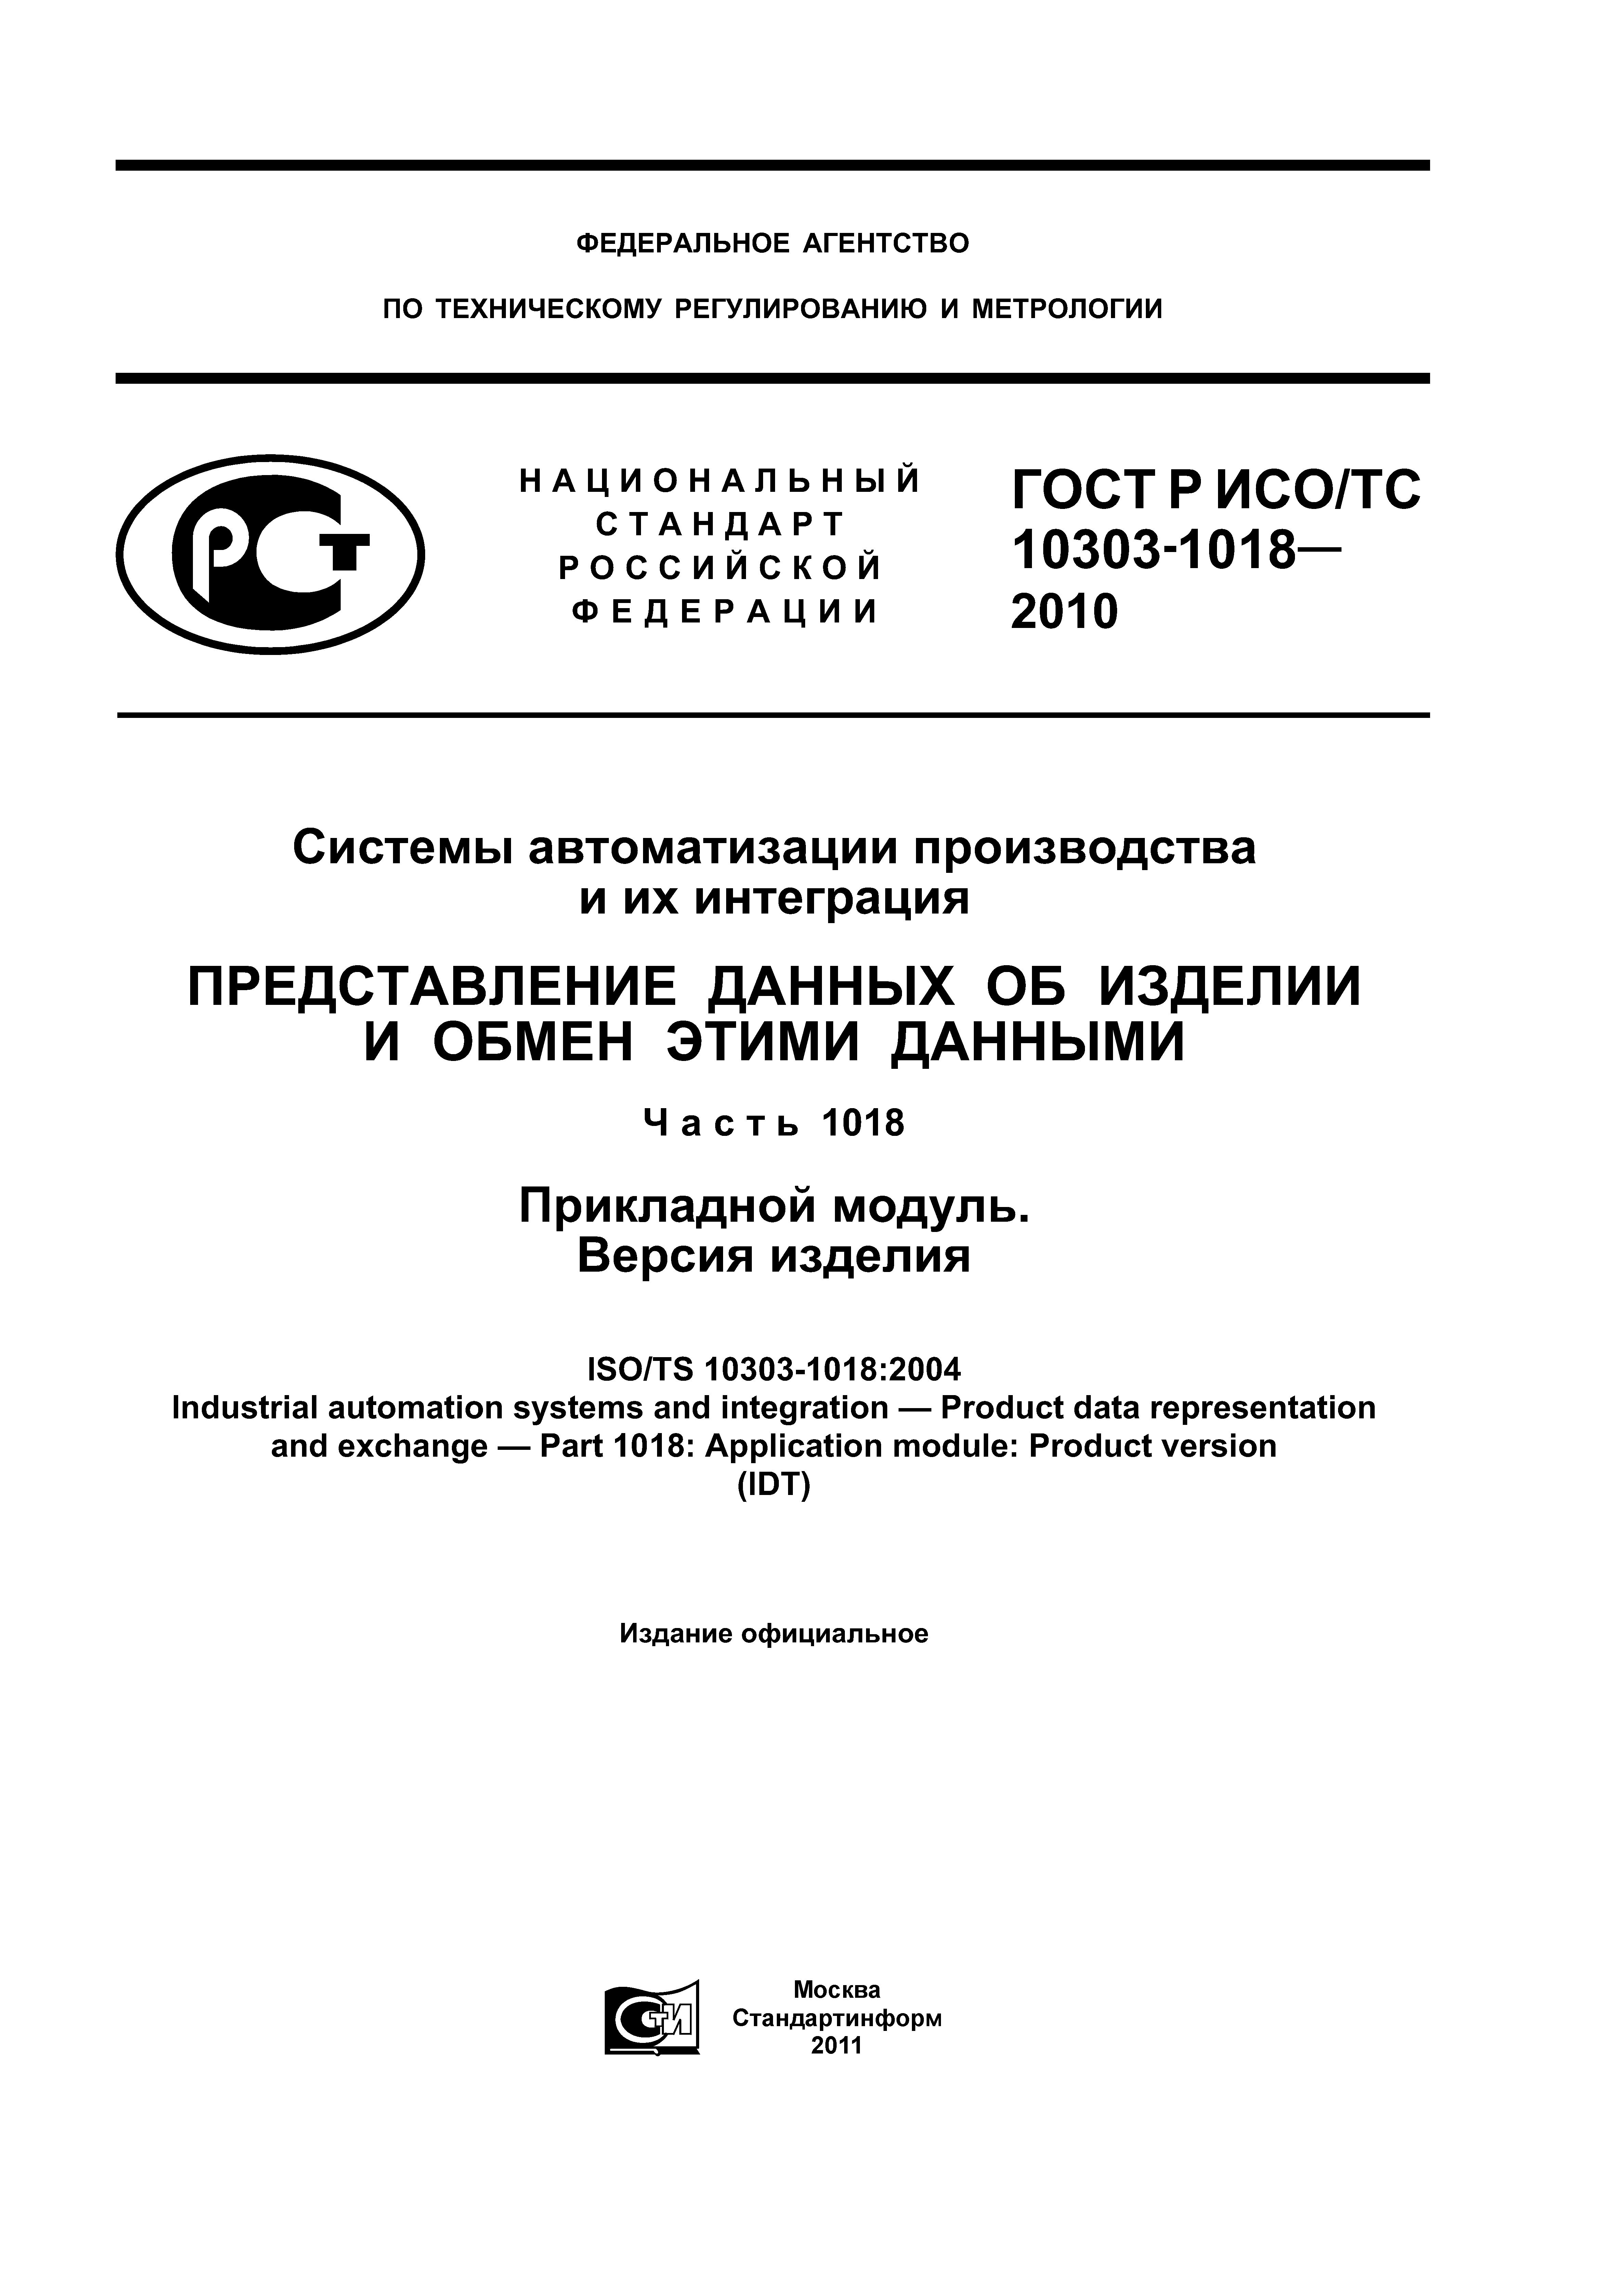 ГОСТ Р ИСО/ТС 10303-1018-2010